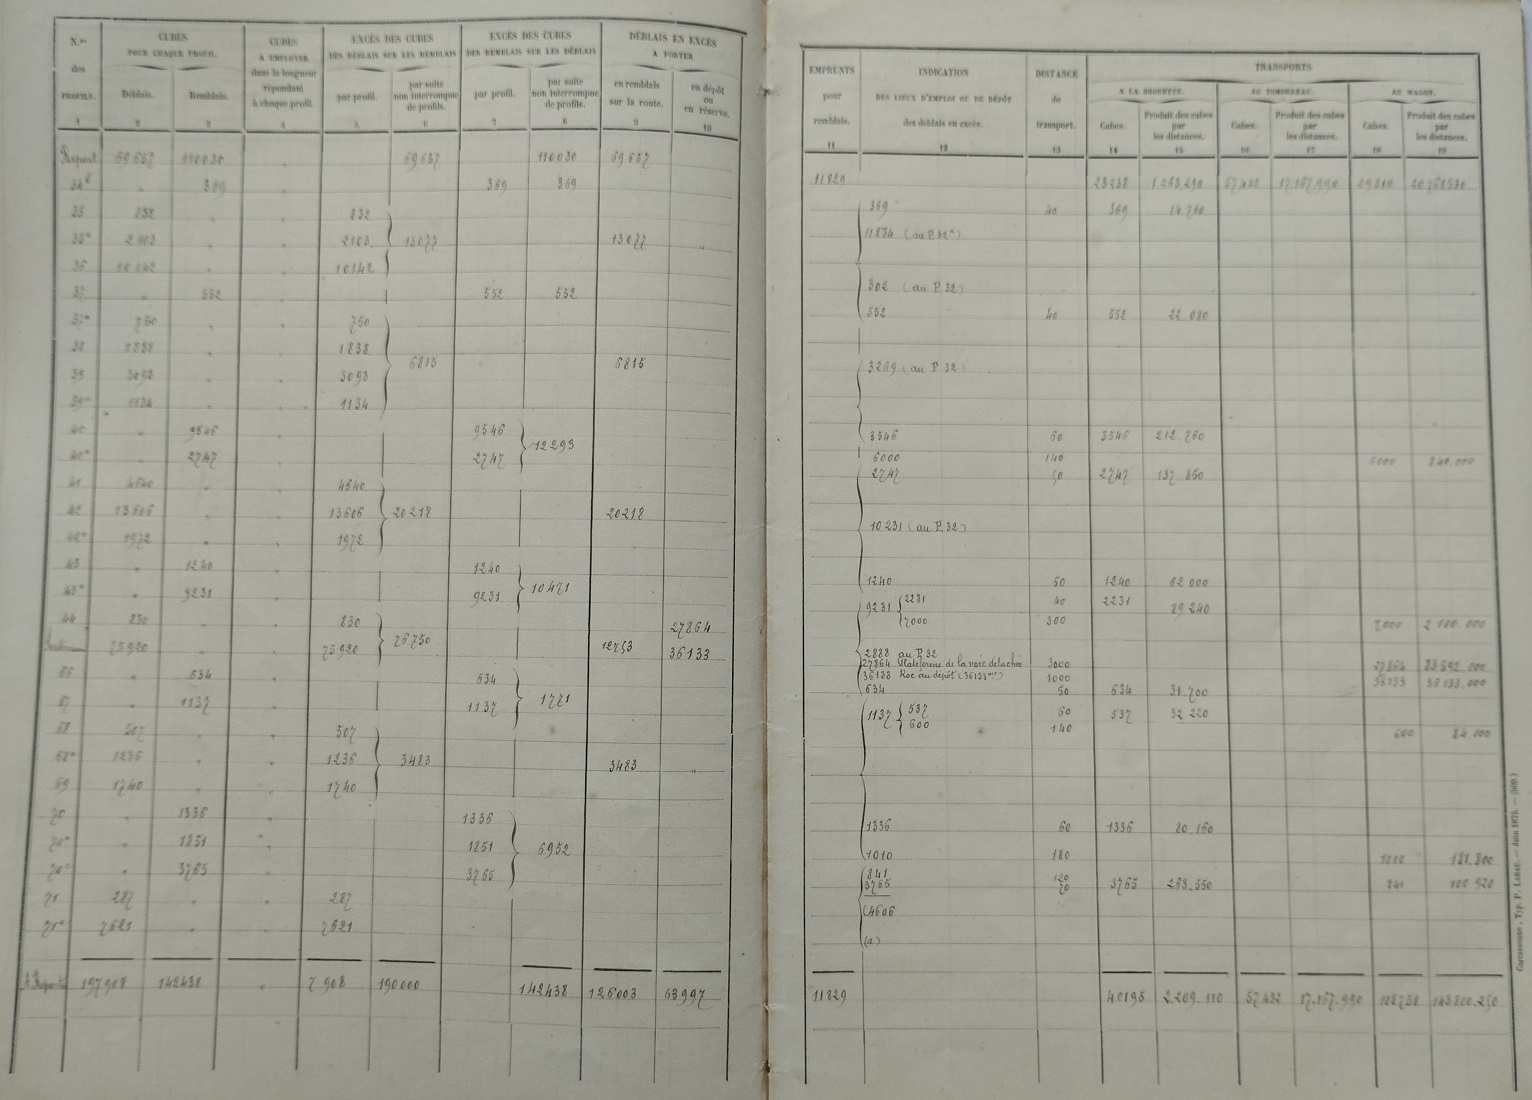 Document avant-métrés du 30 décembre 1878